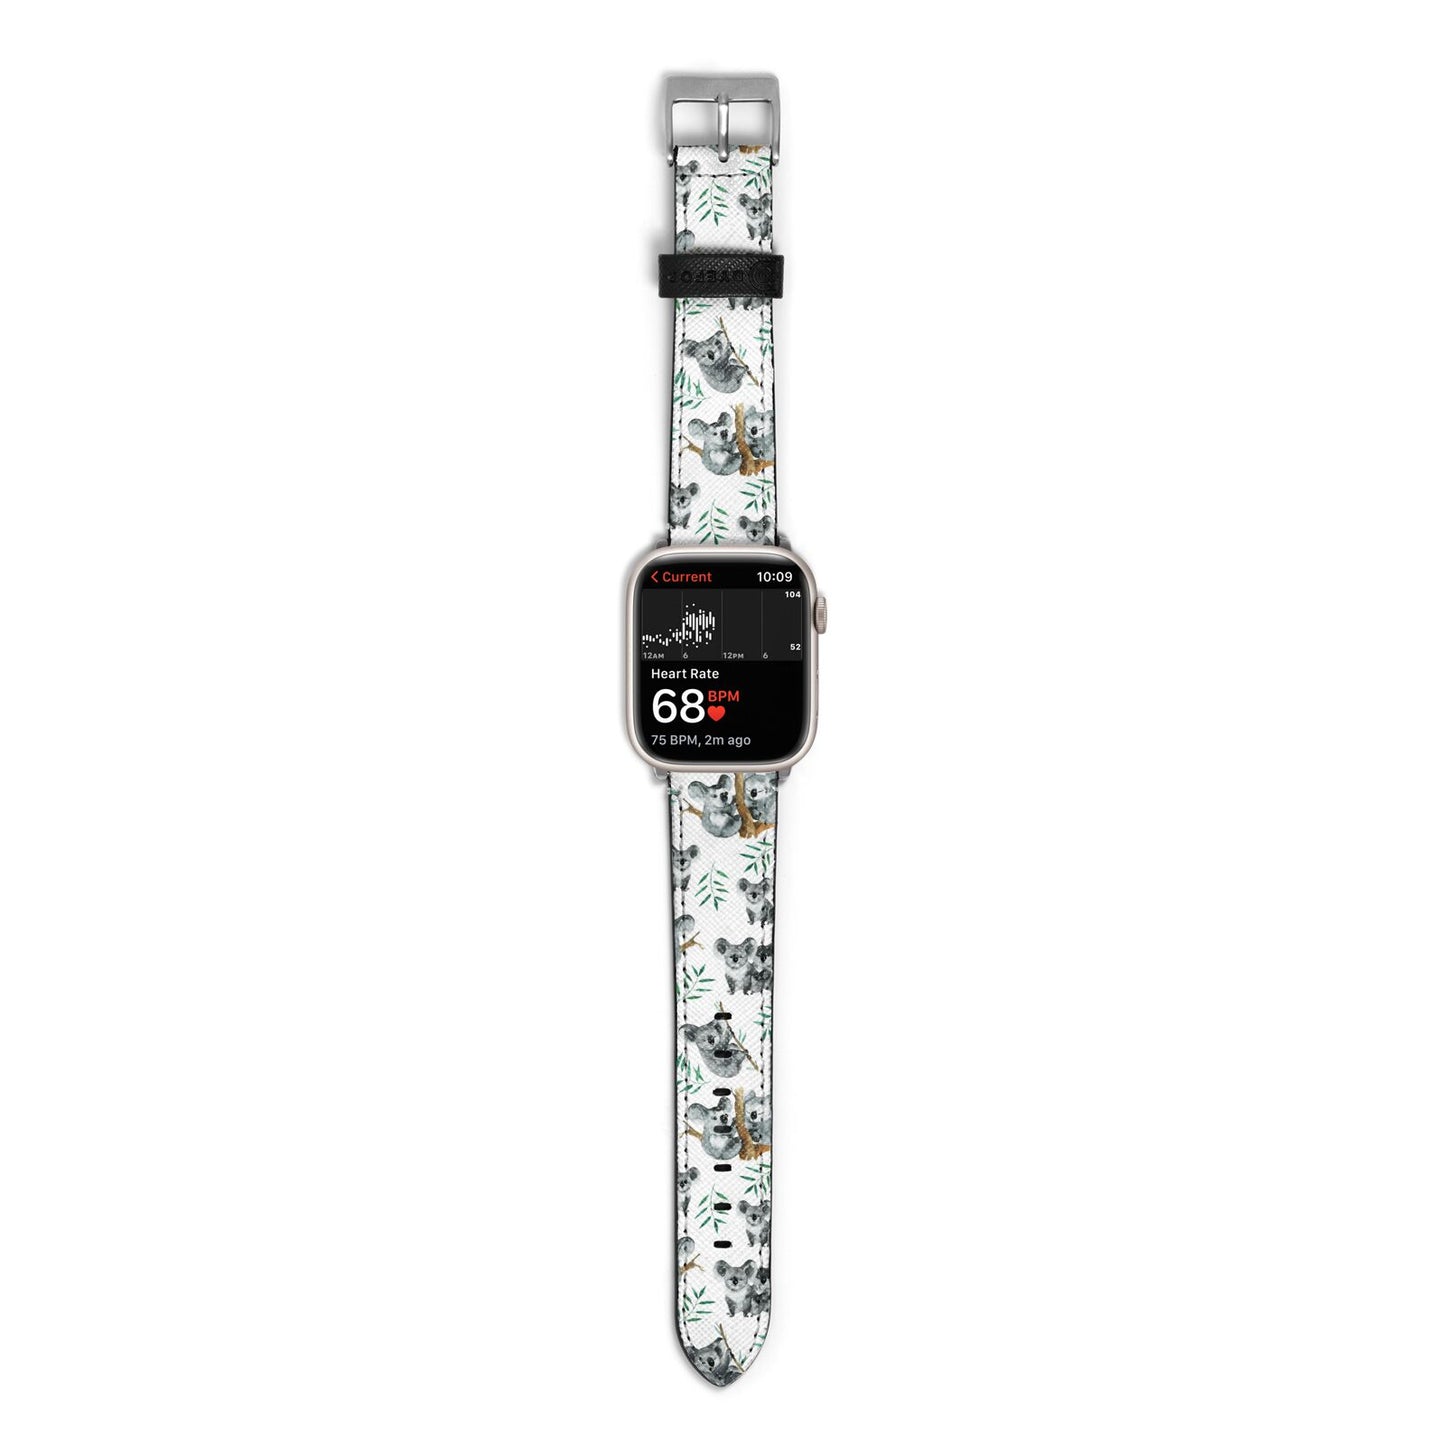 Koala Bear Apple Watch Strap Size 38mm with Silver Hardware